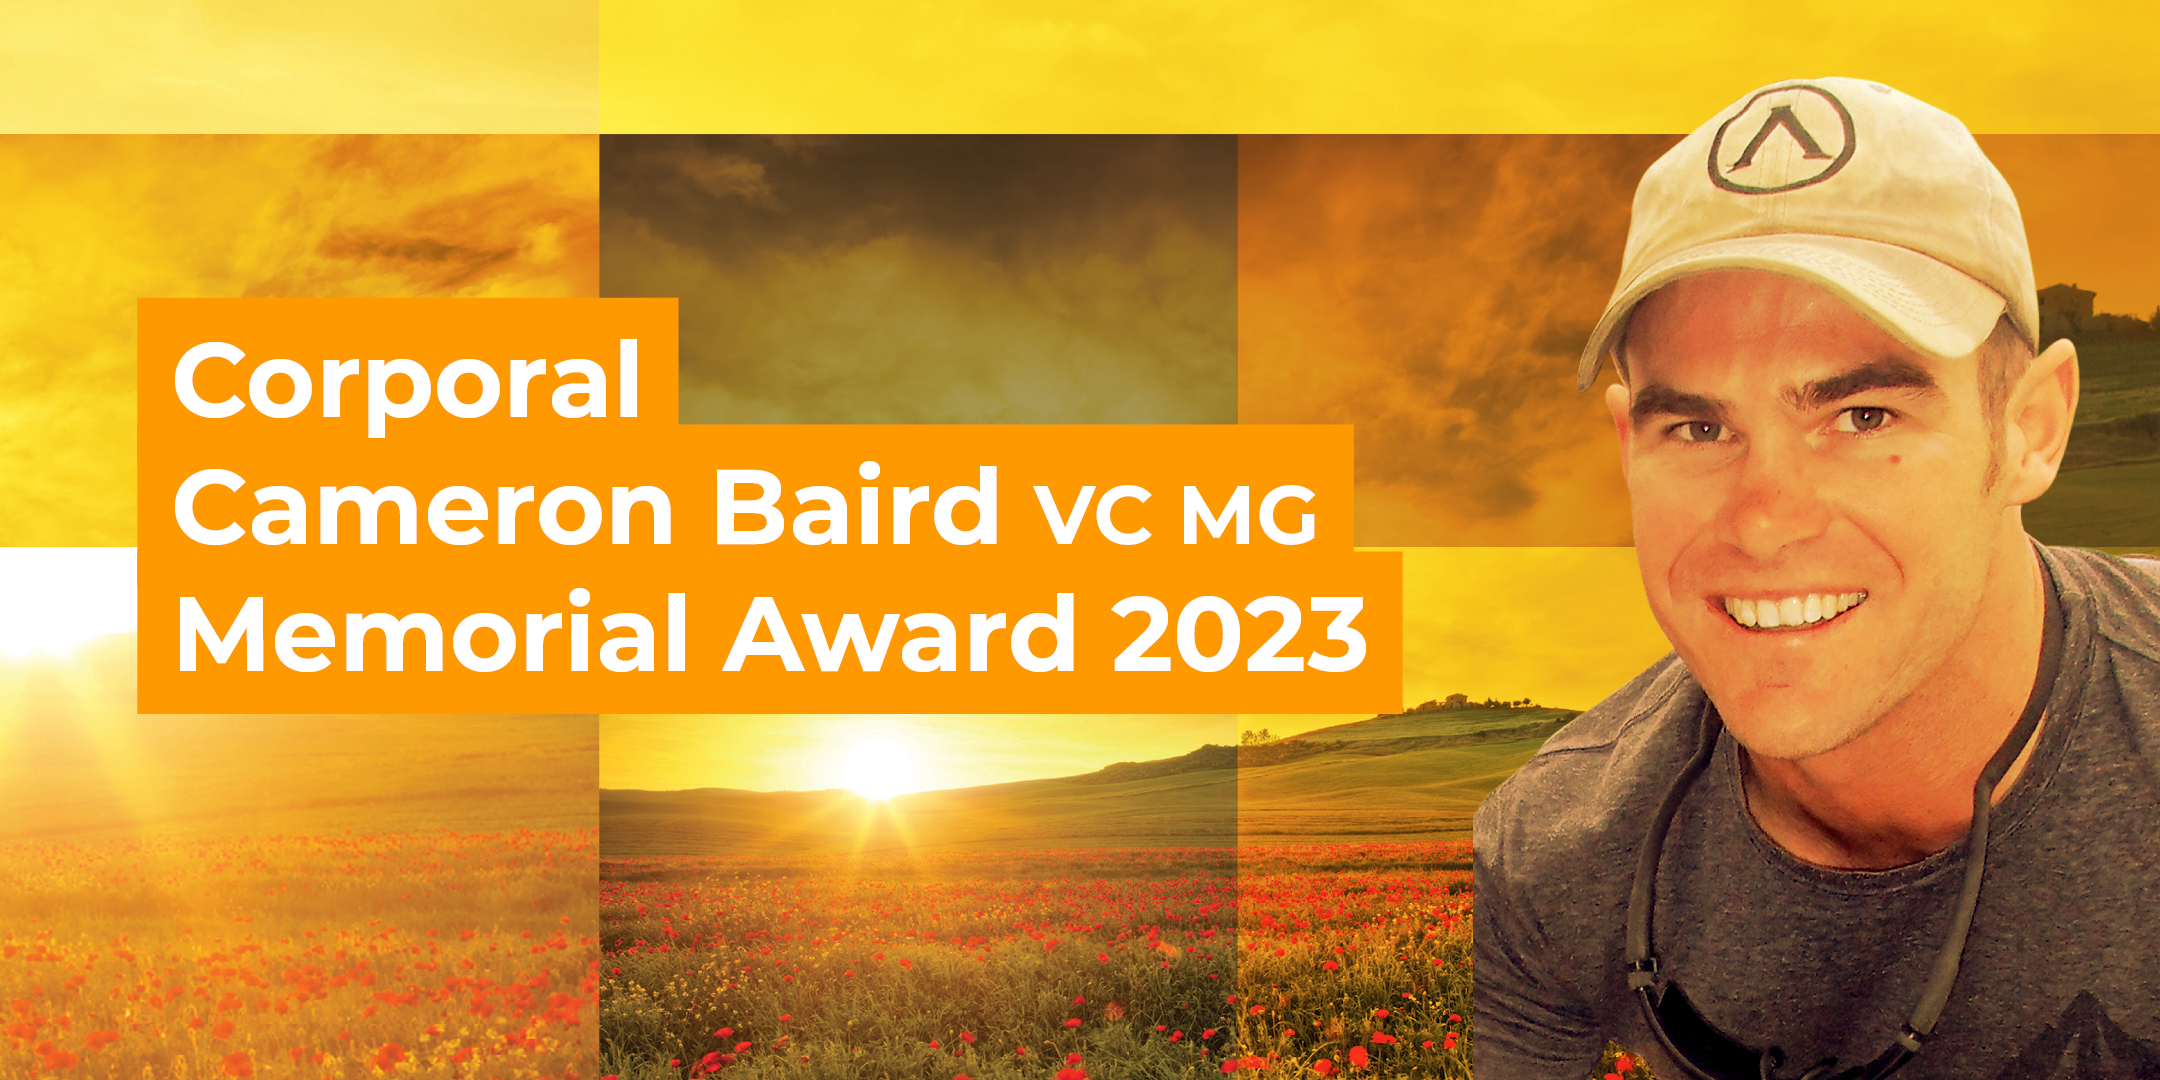 The Corporal Cameron Baird VC MG Memorial Award